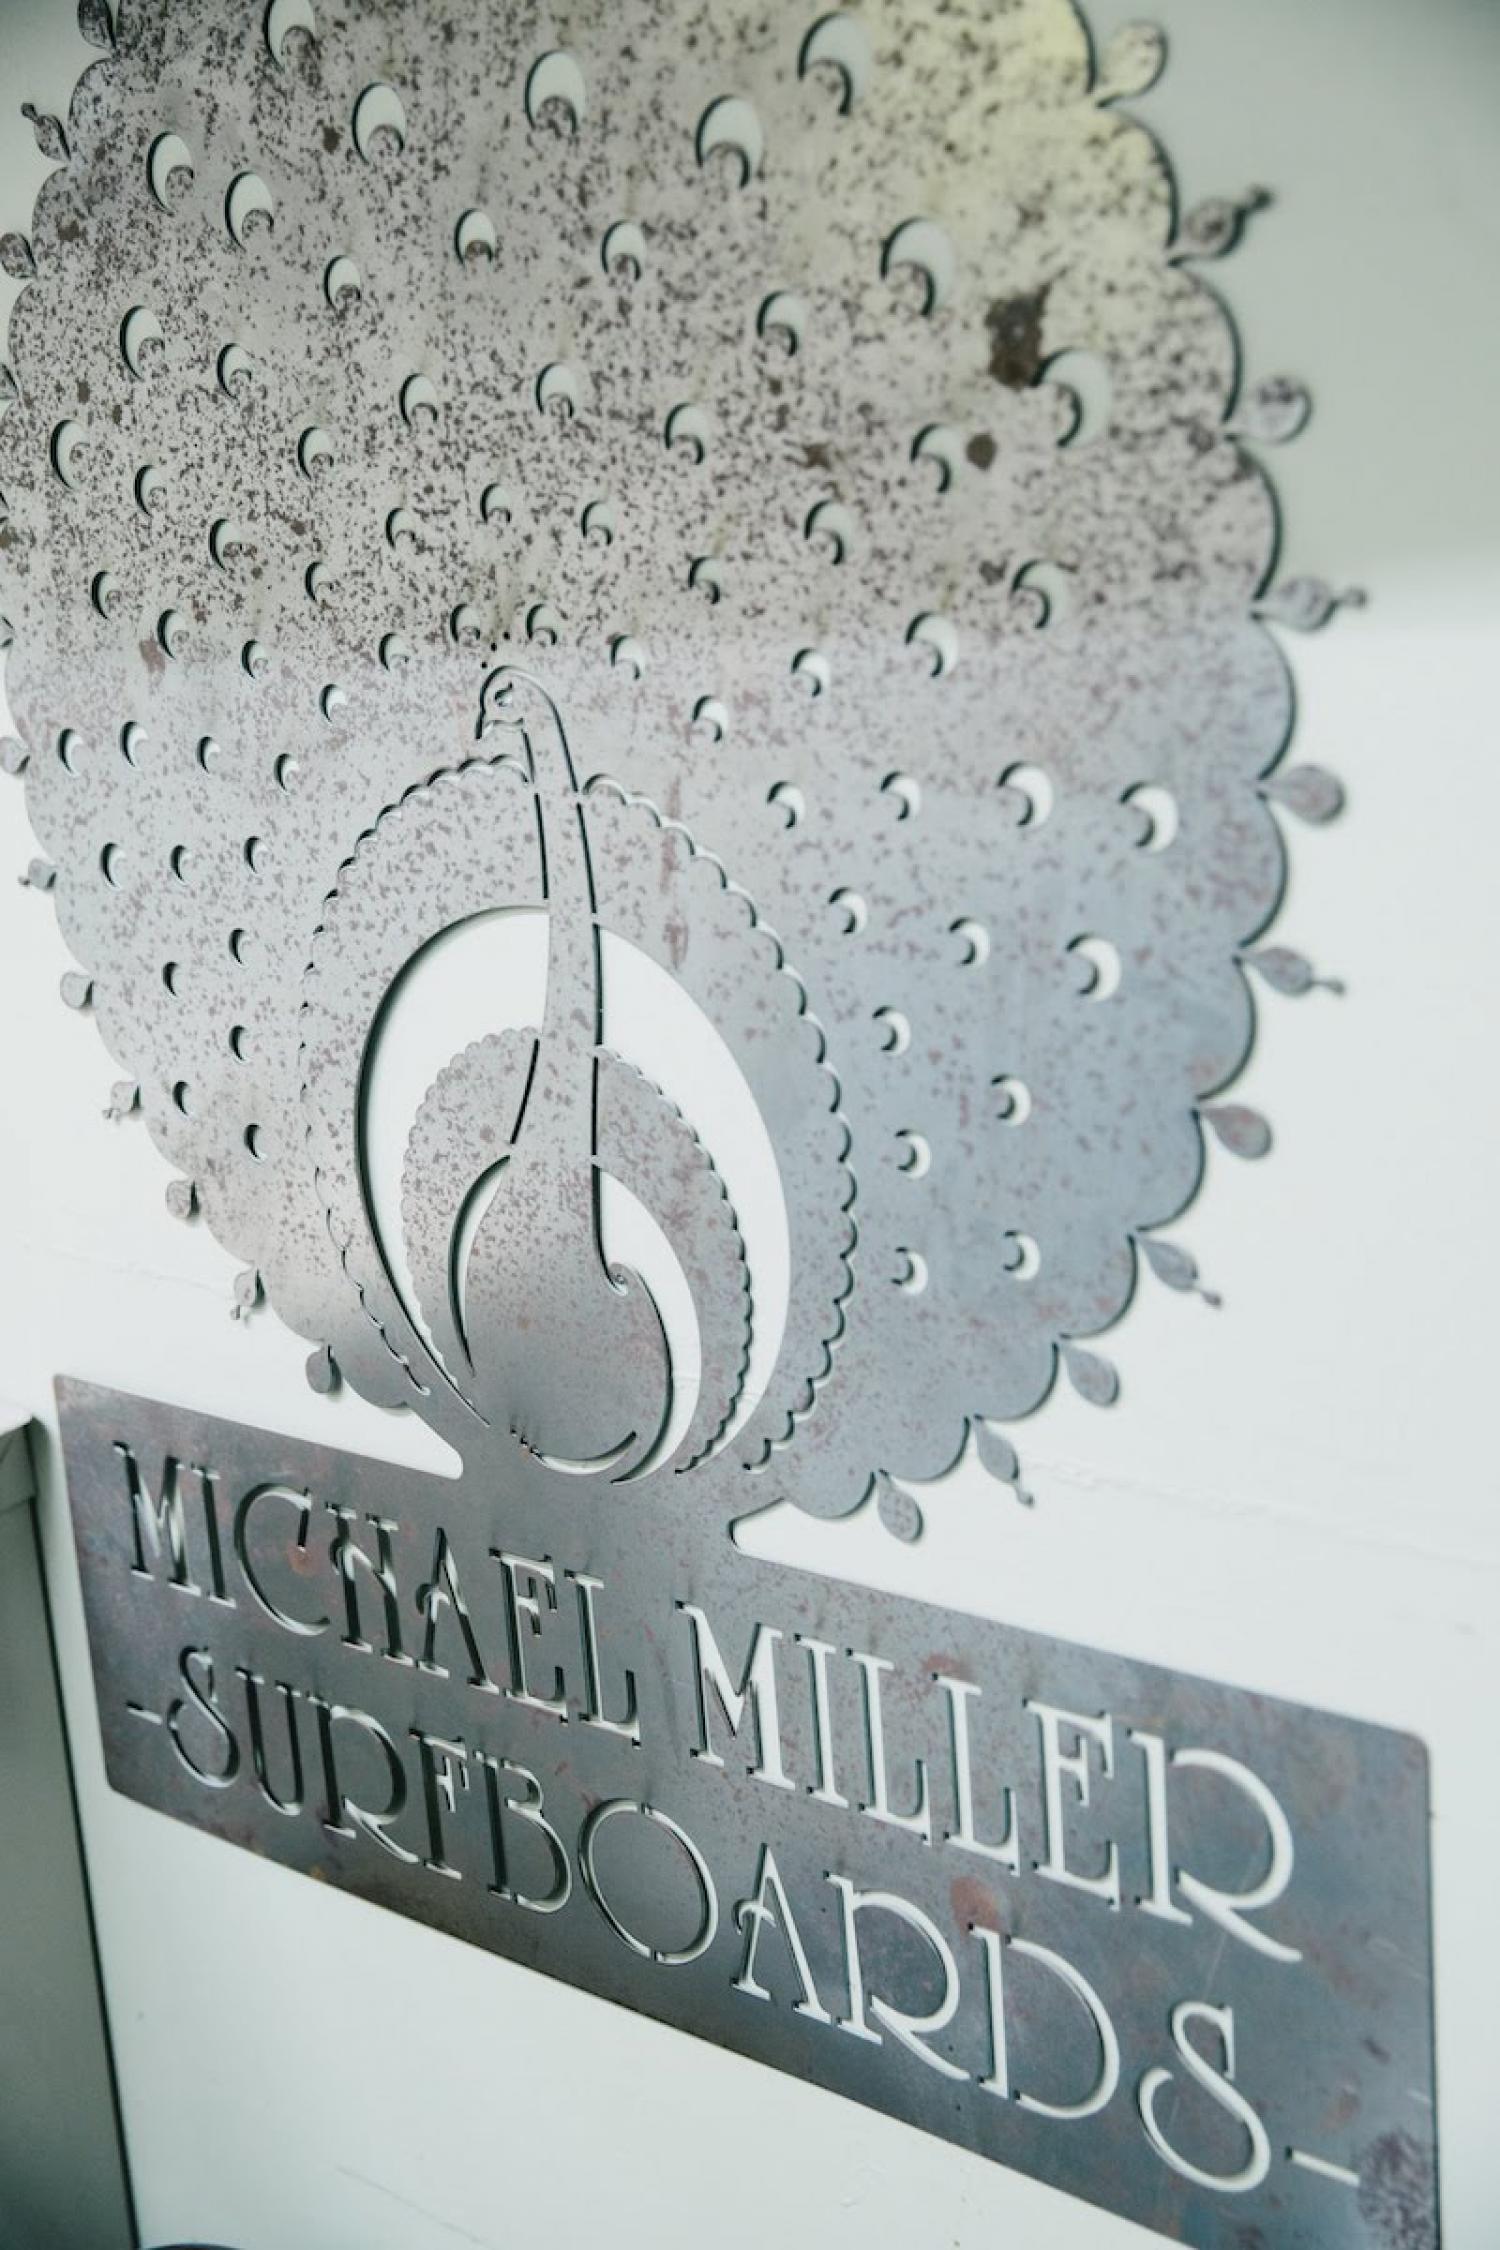 Michael Miller Surfboards